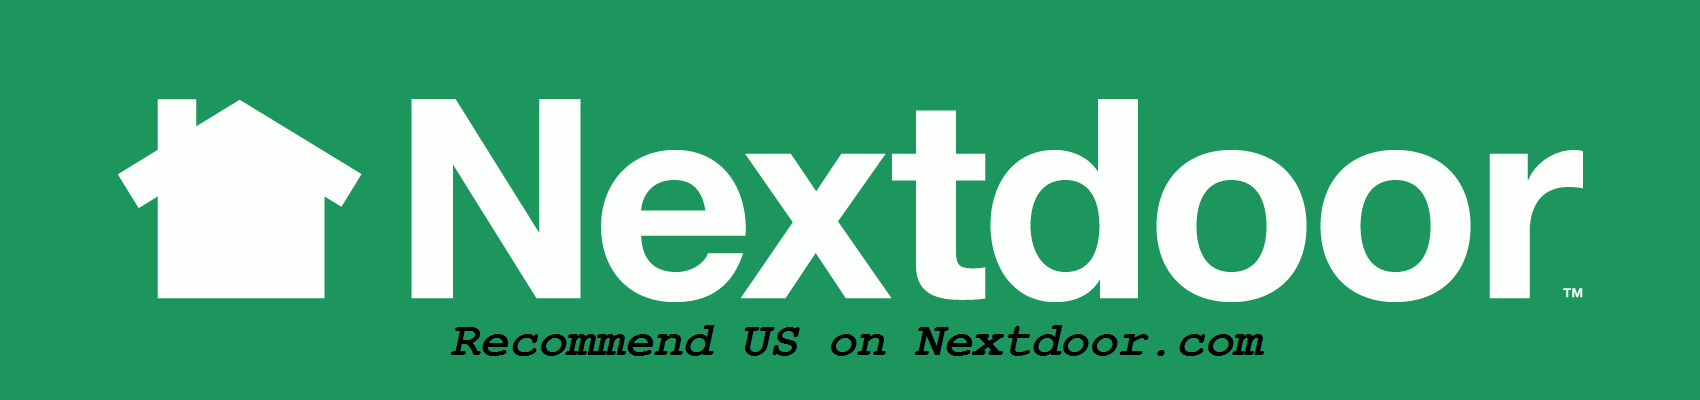 Nextdoor.com